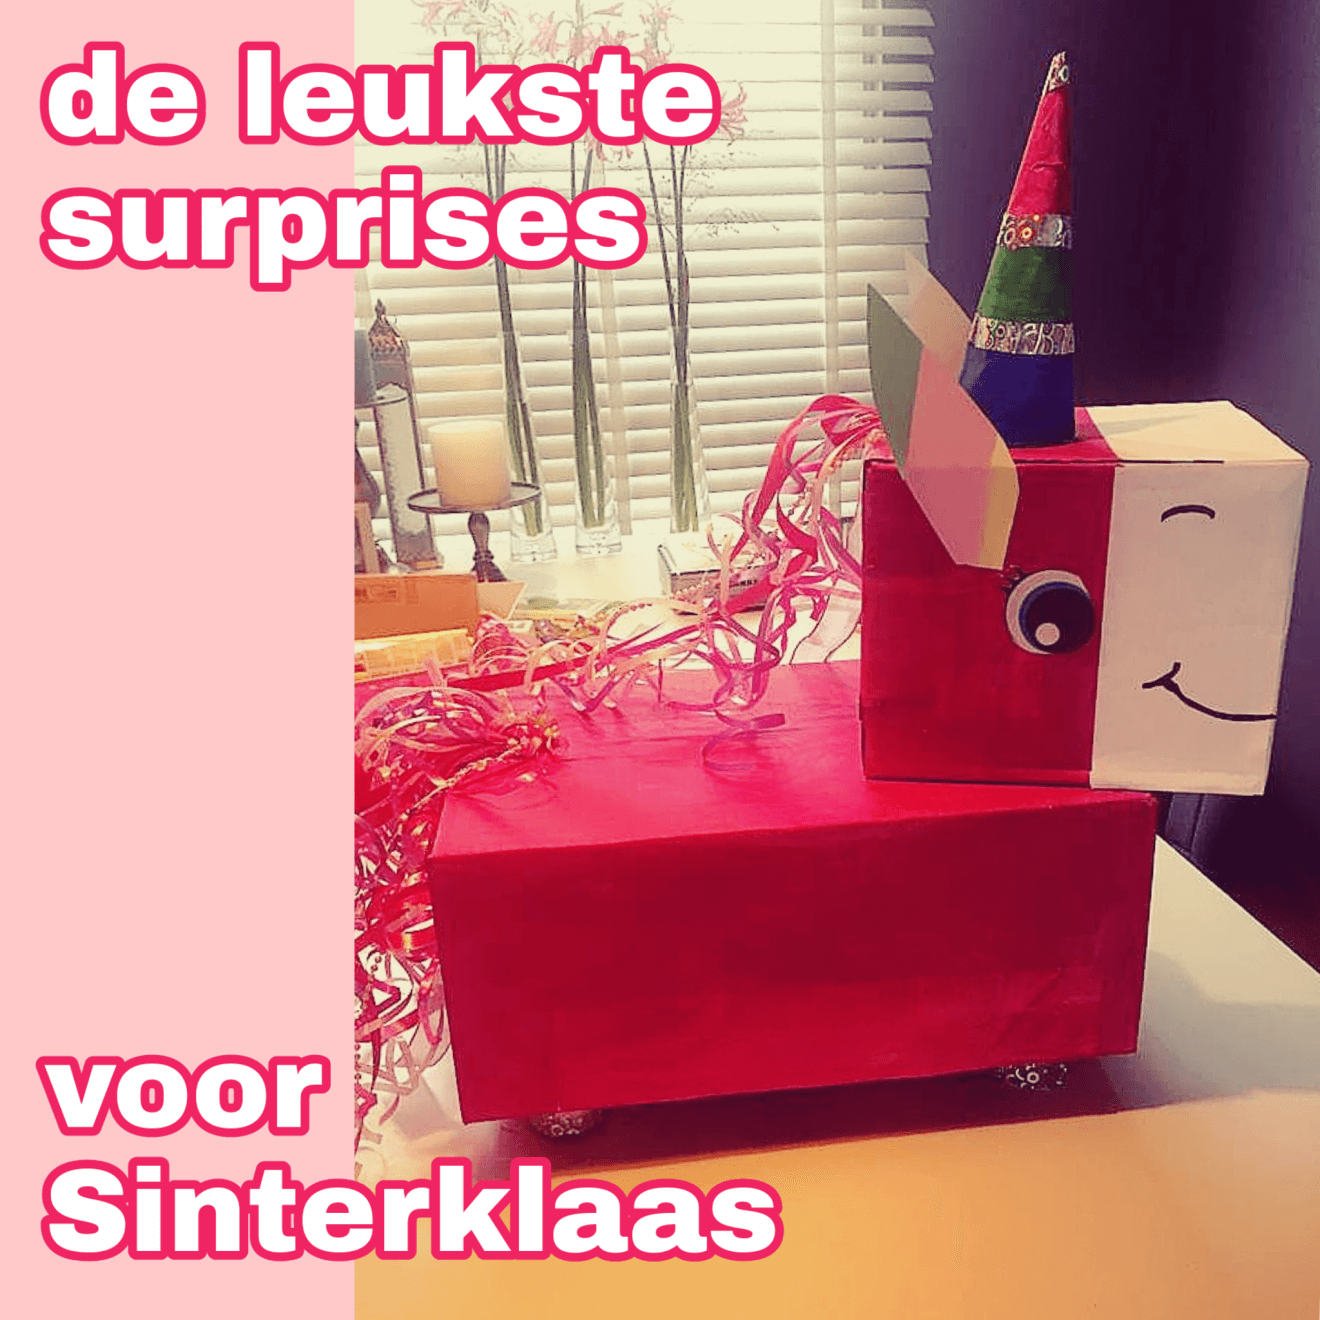 Sinterklaas surprise knutselen: heel veel leuke ideeën